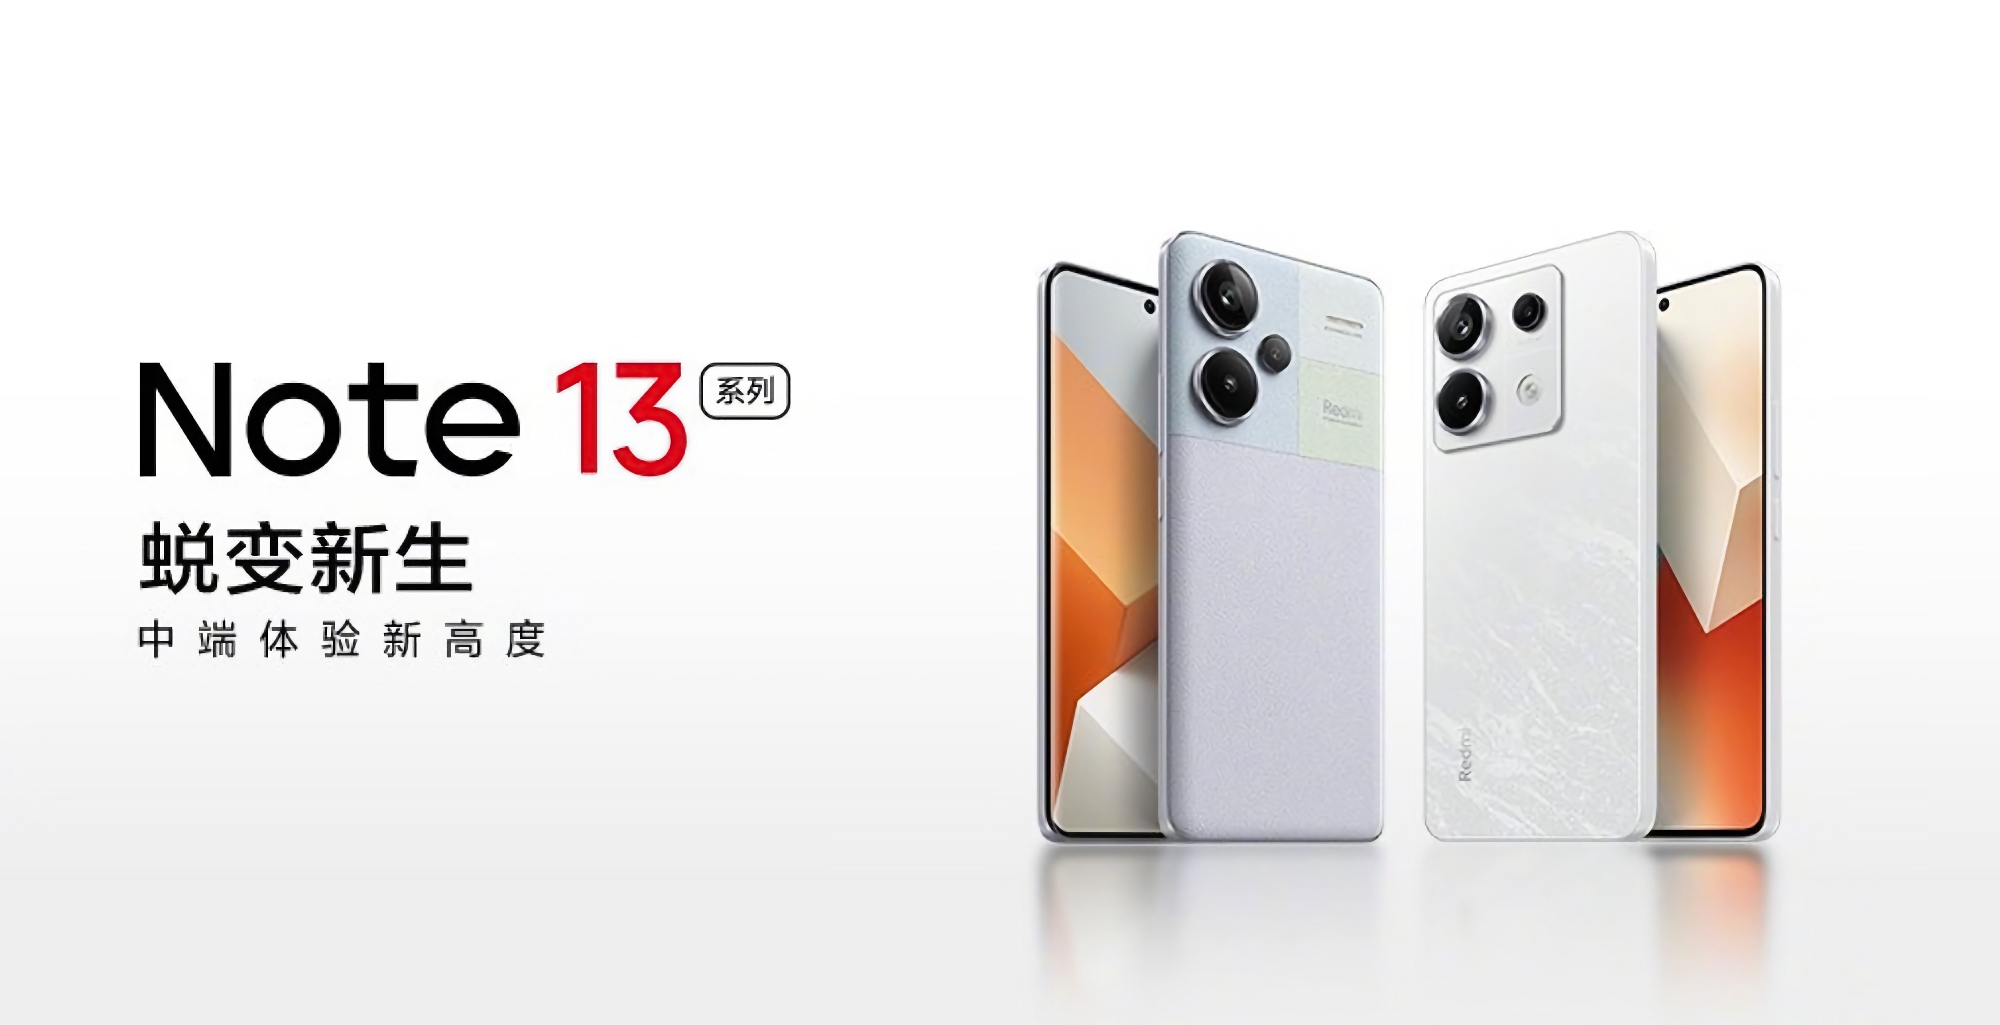 Офіційно: Xiaomi 21 вересня представить лінійку смартфонів Redmi Note 13